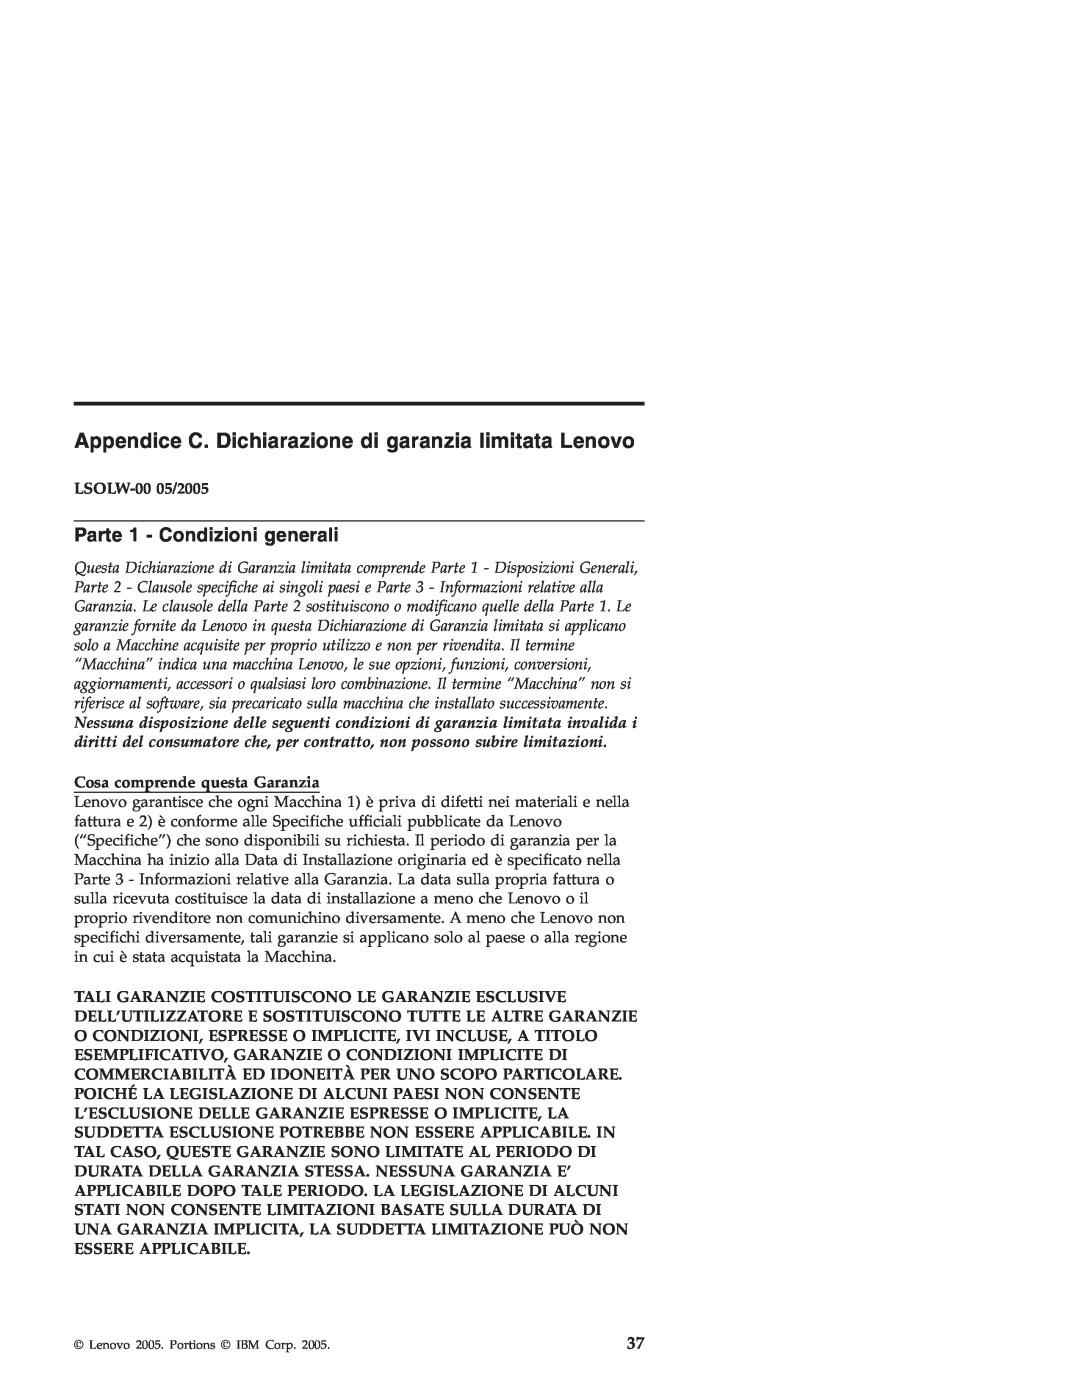 Lenovo 3000 SERIE J manual Appendice C. Dichiarazione di garanzia limitata Lenovo, Parte 1 - Condizioni generali 